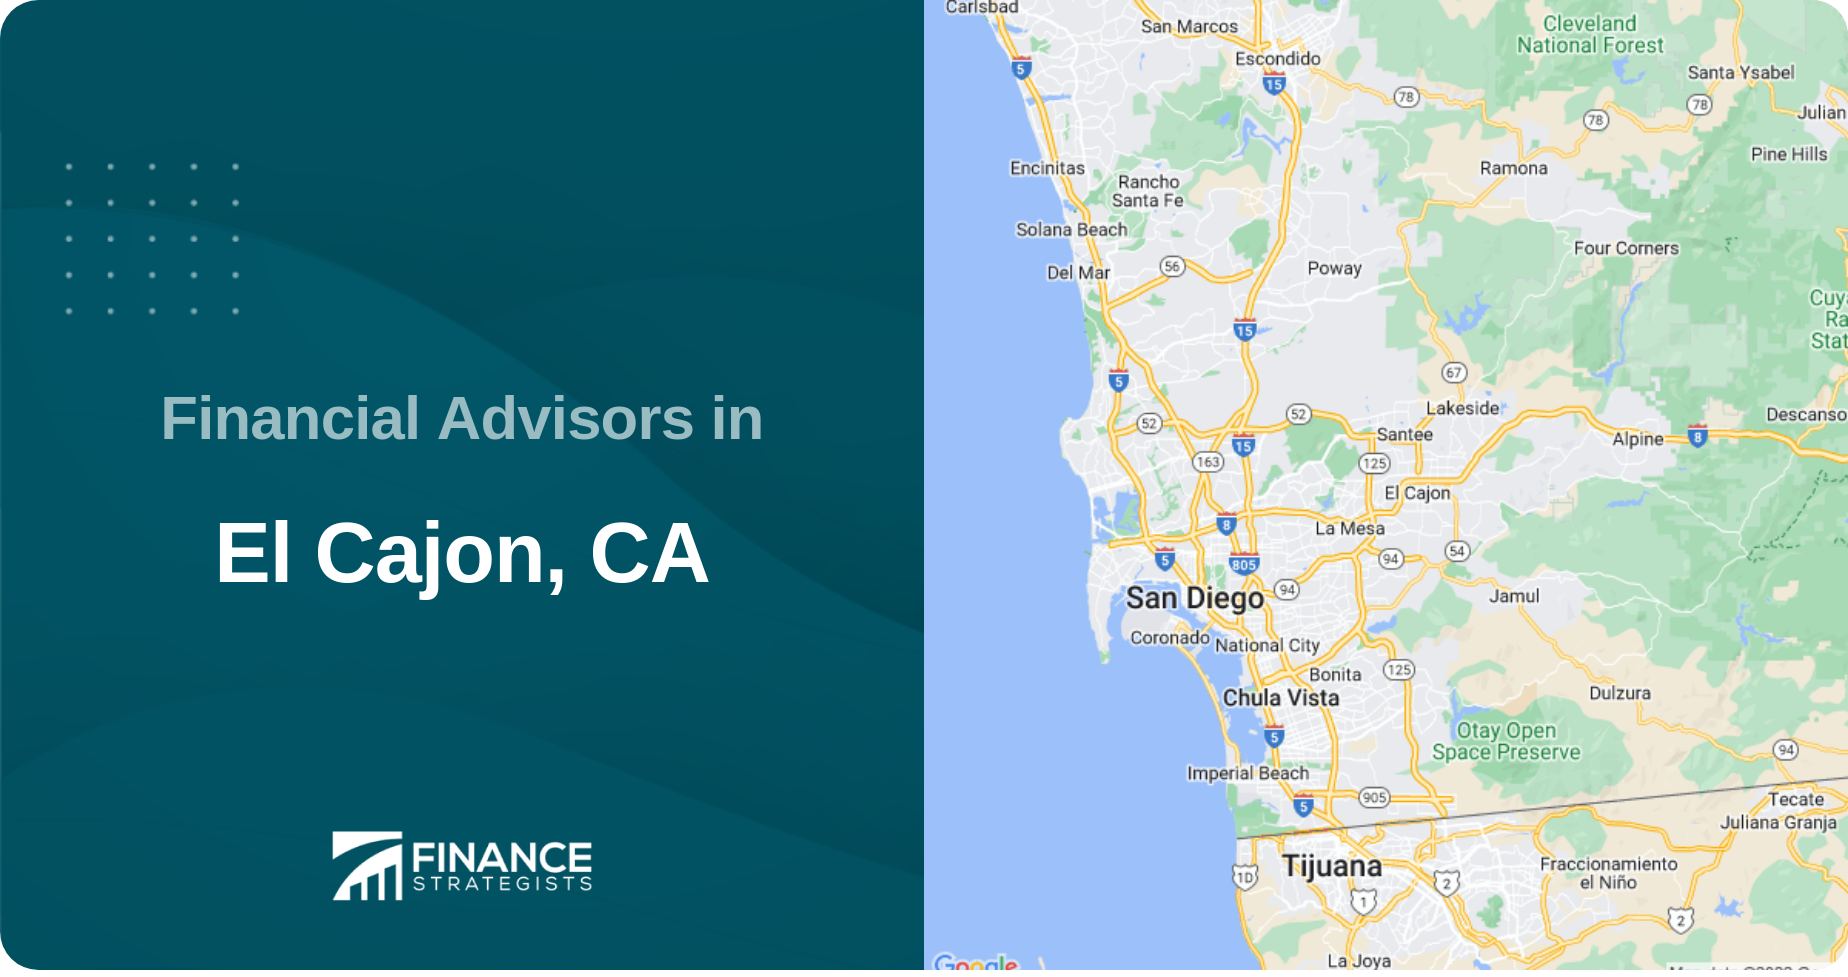 Financial Advisors in El Cajon, CA